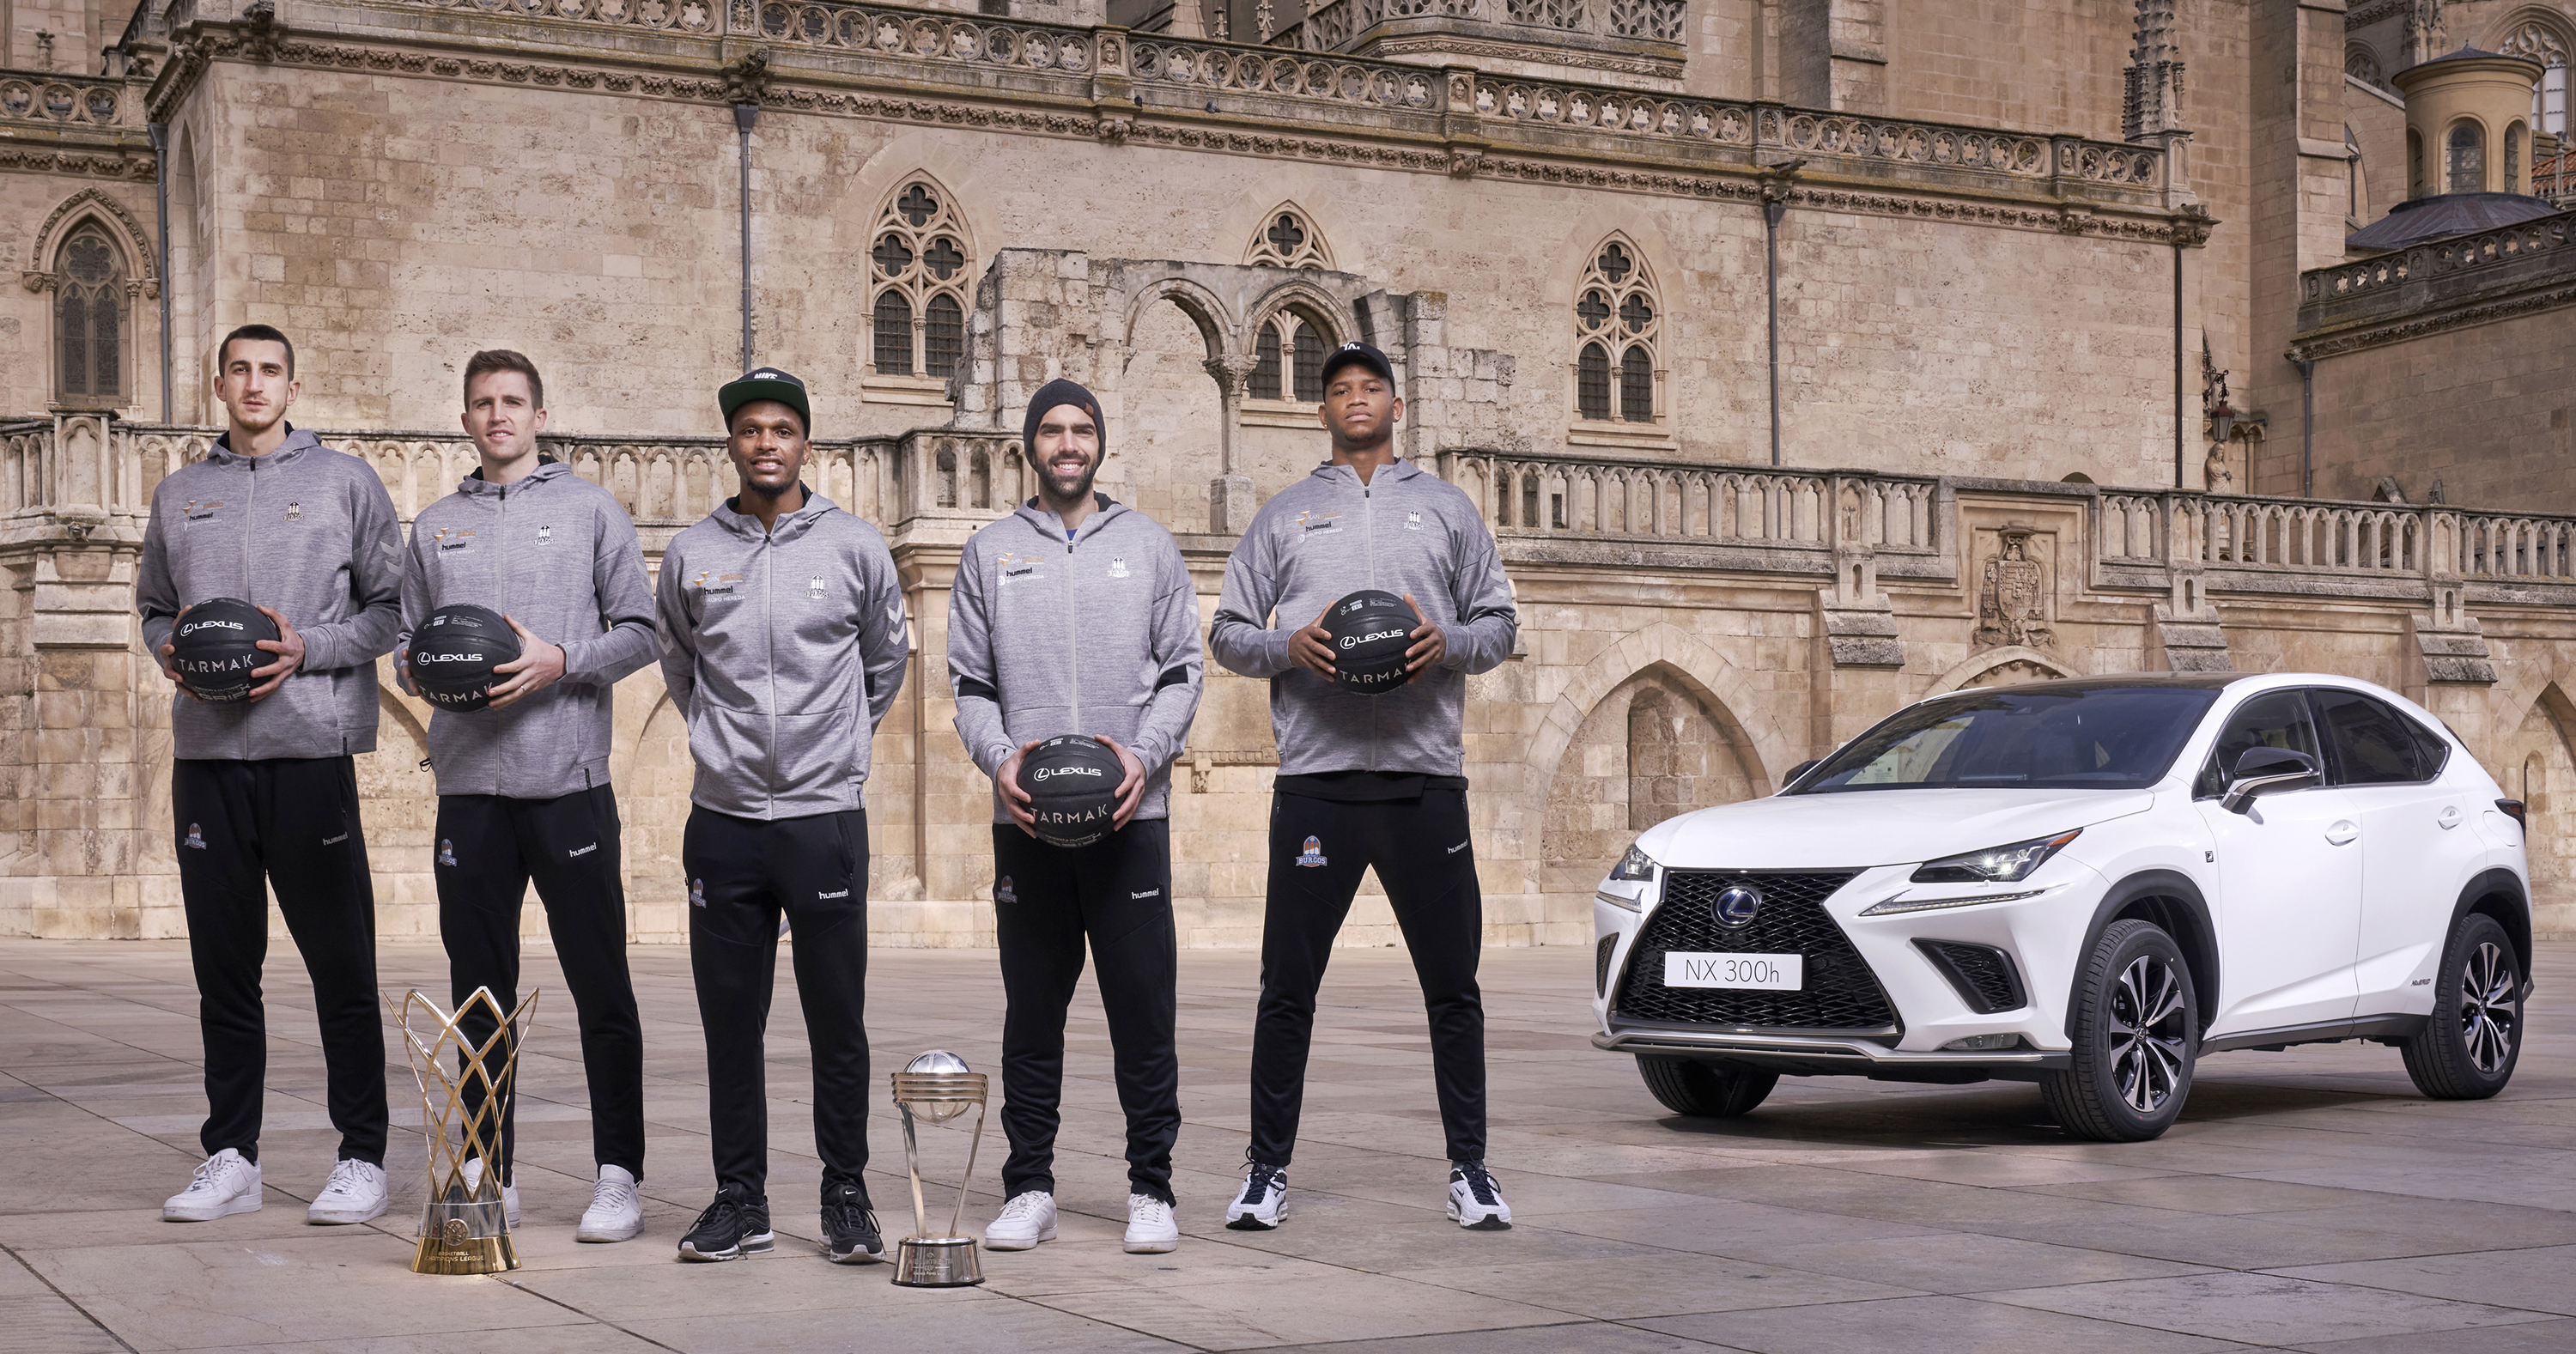 Galería: Lexus, patrocinador del club de baloncesto Hereda San Pablo Burgos, Ganador de la FIBA Intercontinental Cup 2021